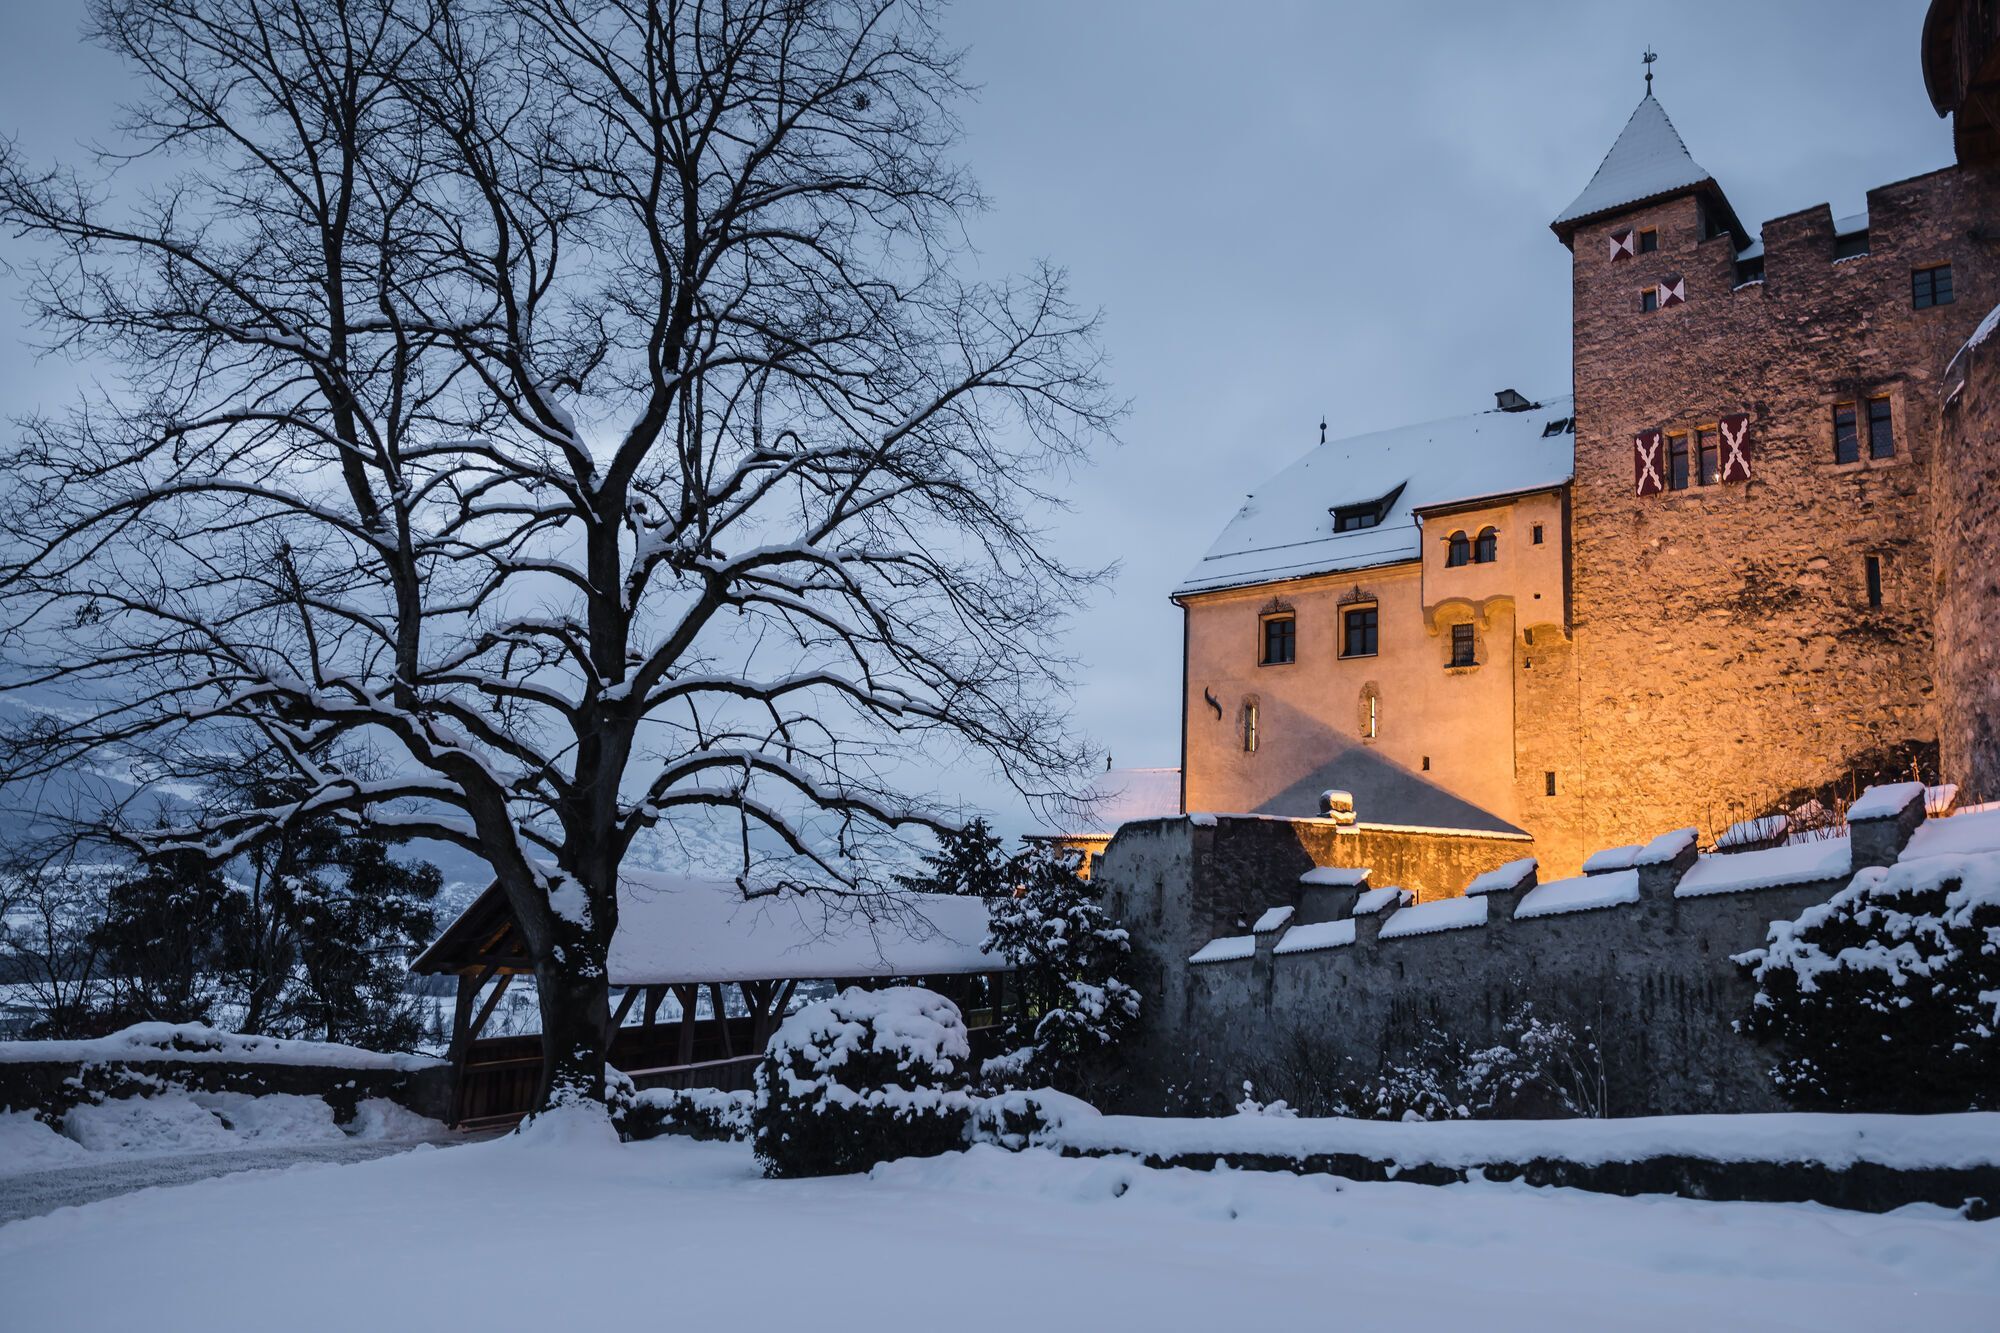 Zamek Vaduz jest dobrym przykładem średniowiecznej architektury